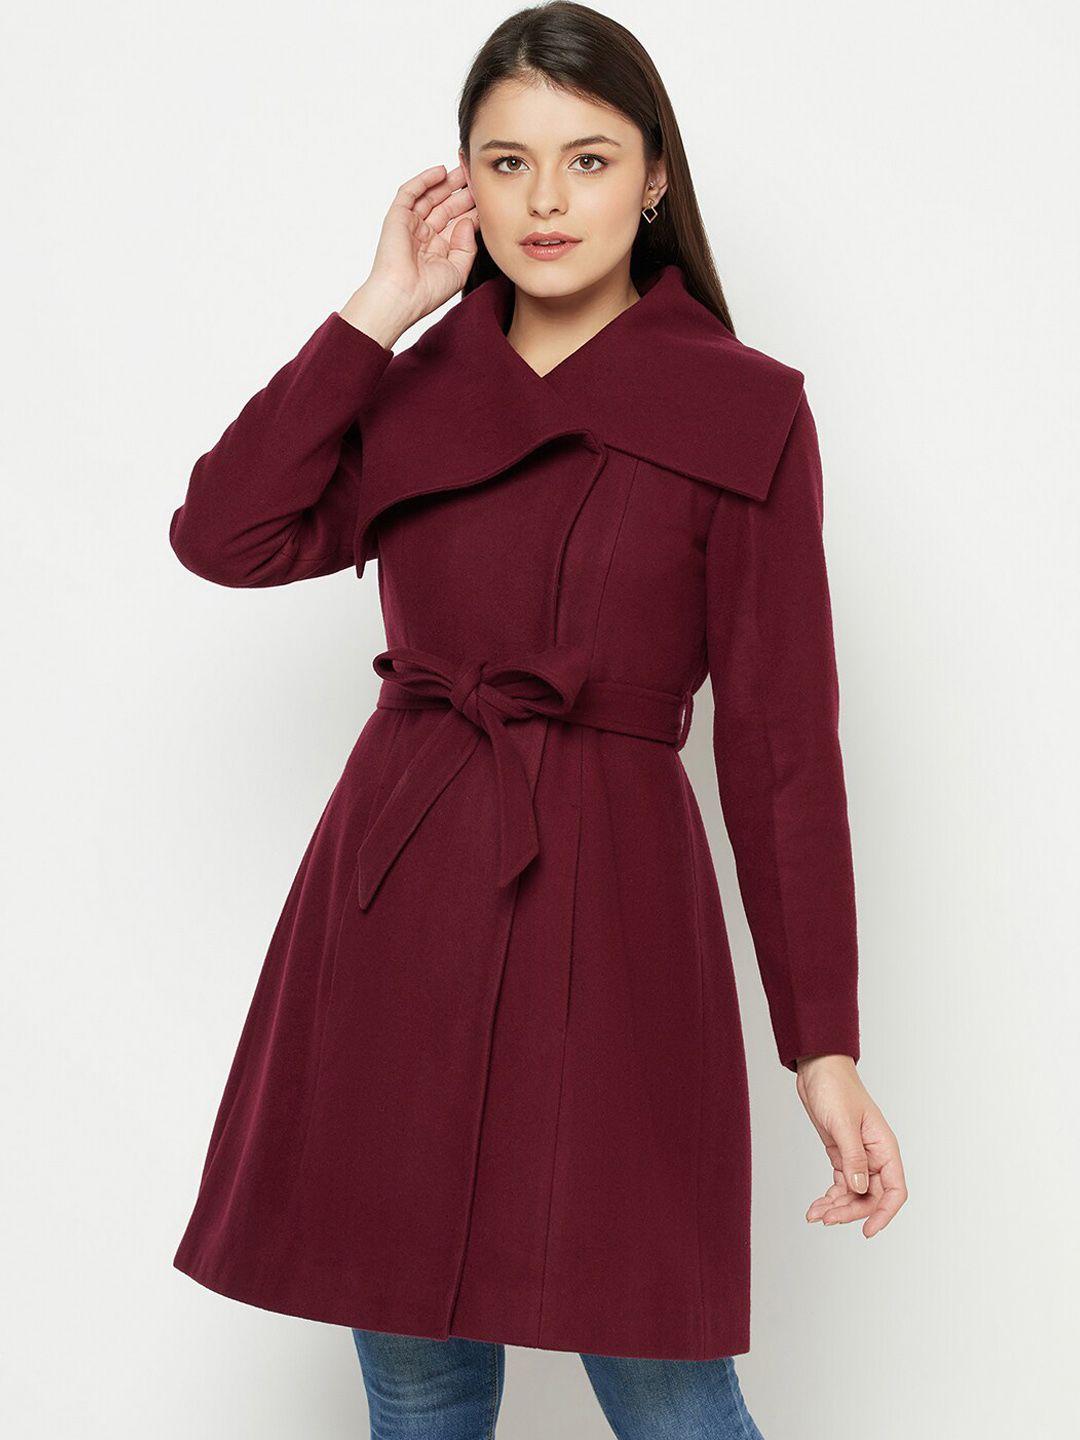 owncraft women maroon solid overcoat